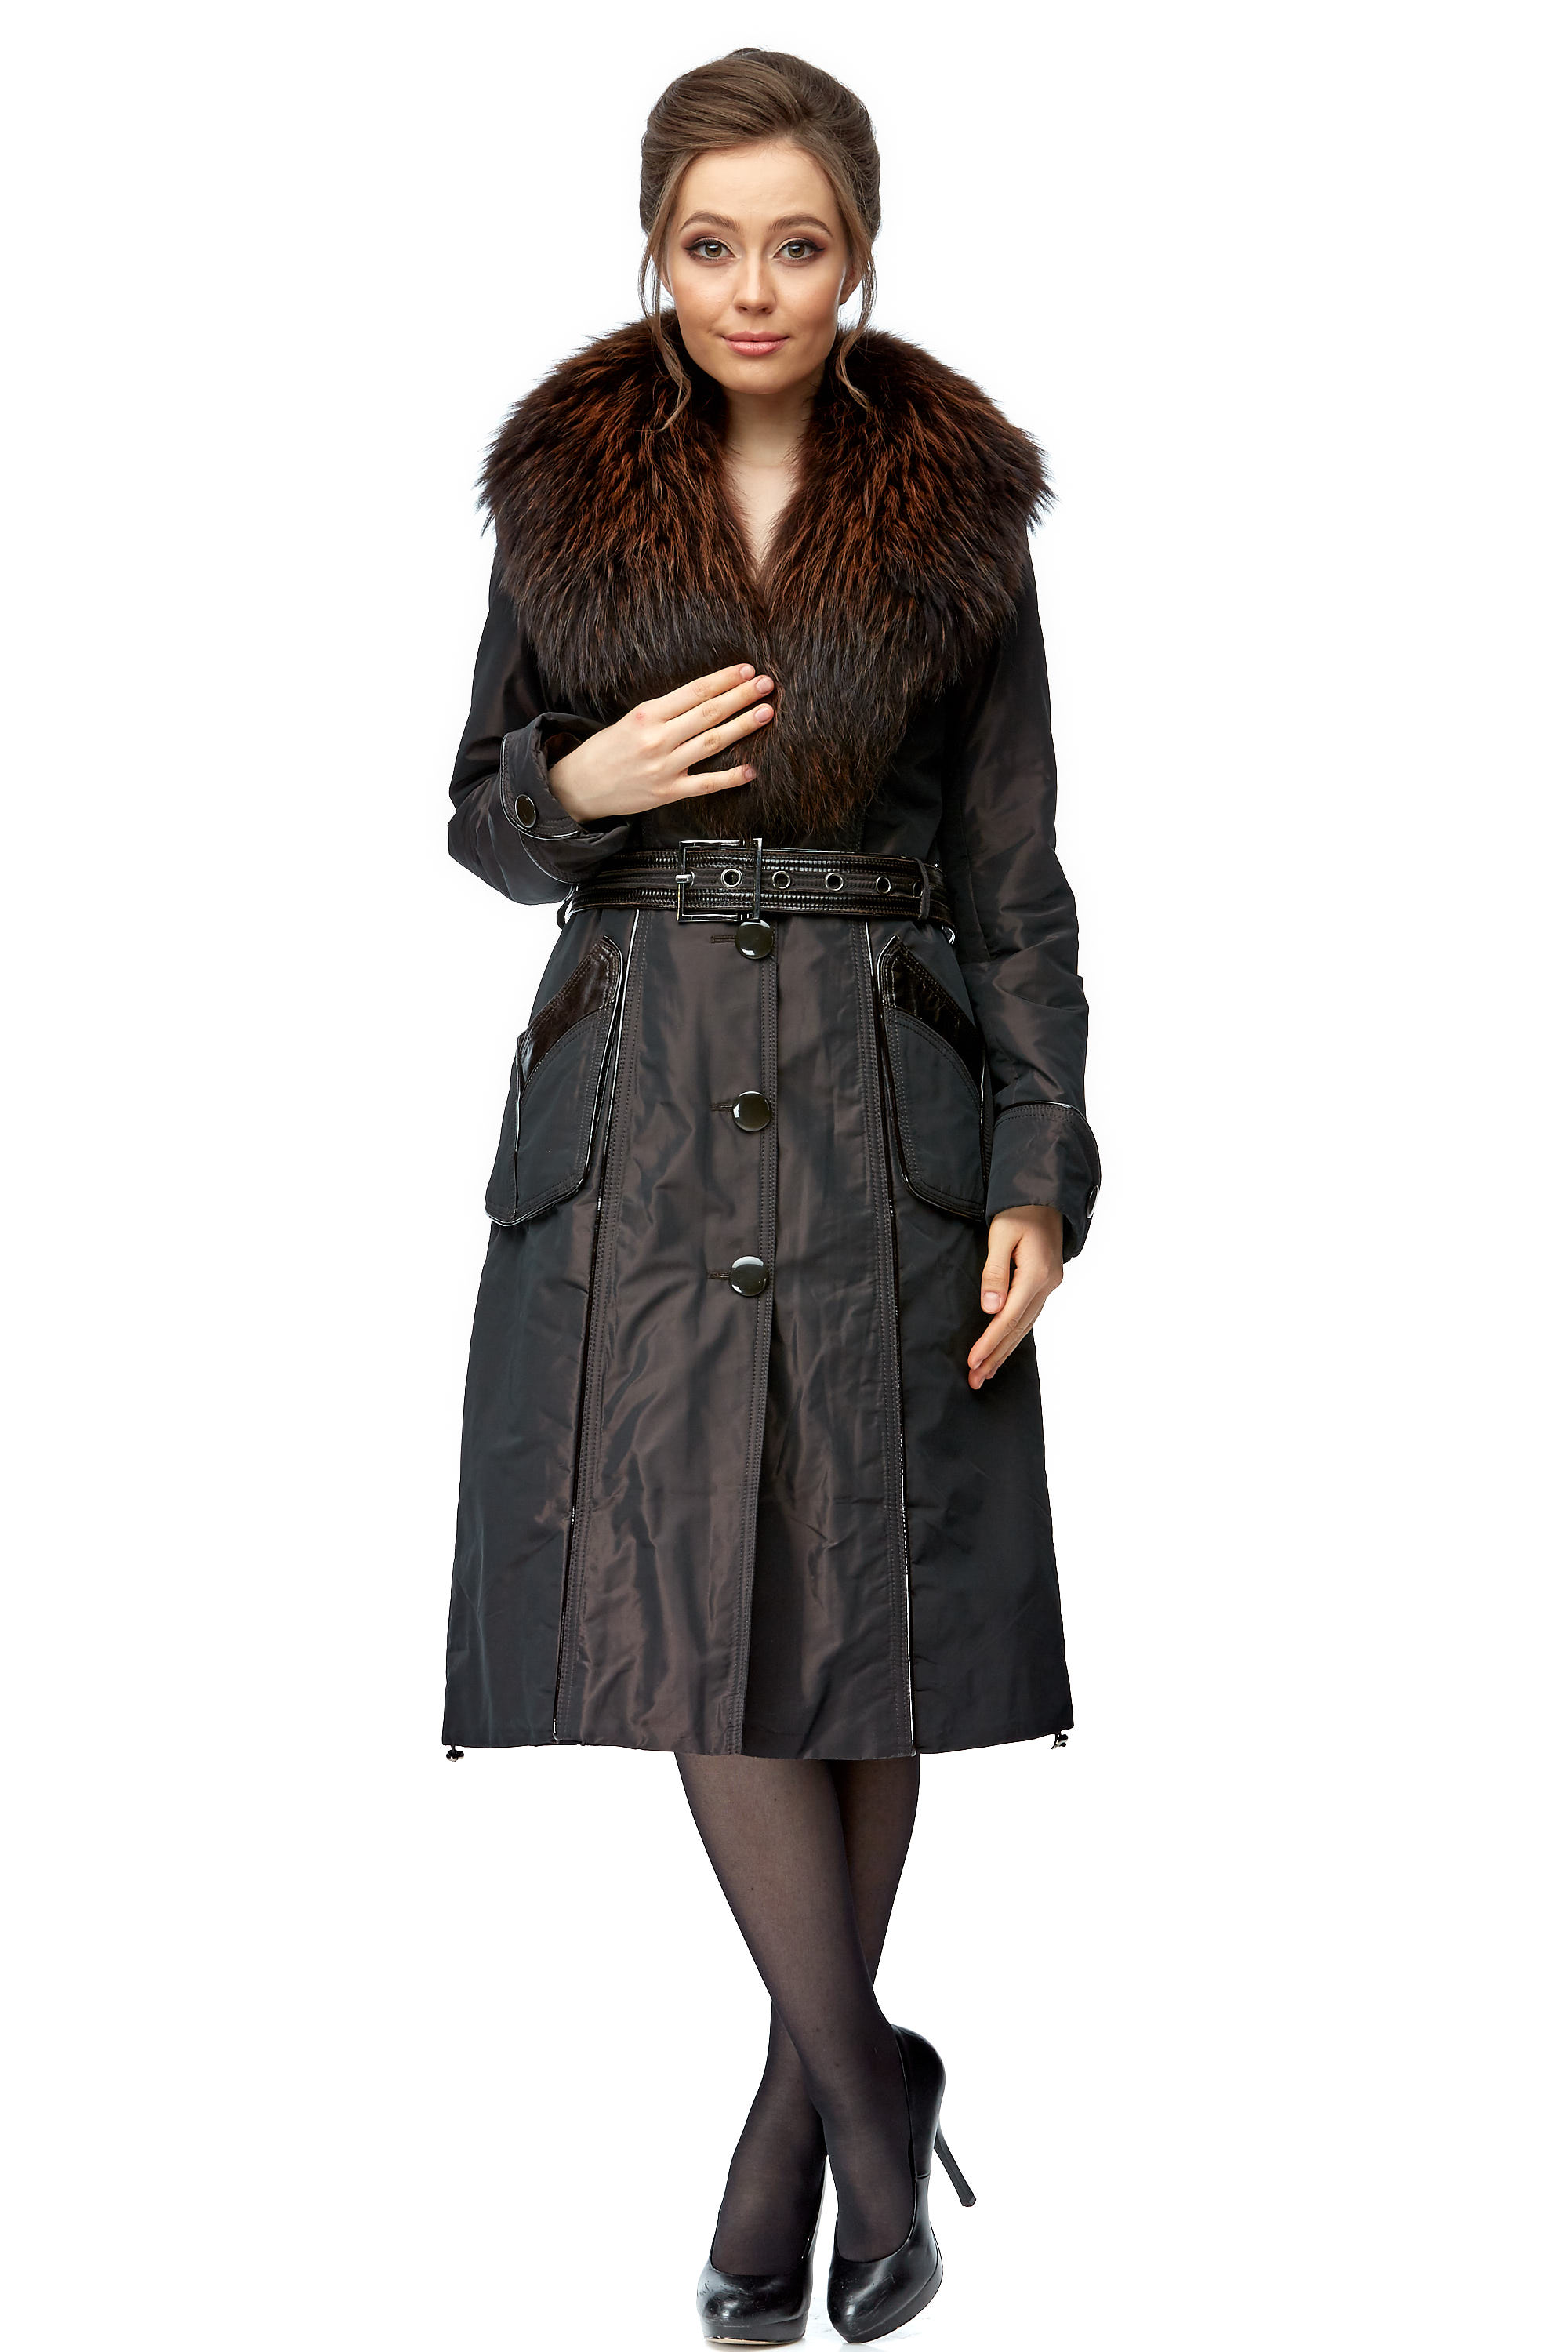 Женское пальто из текстиля с воротником, отделка енот